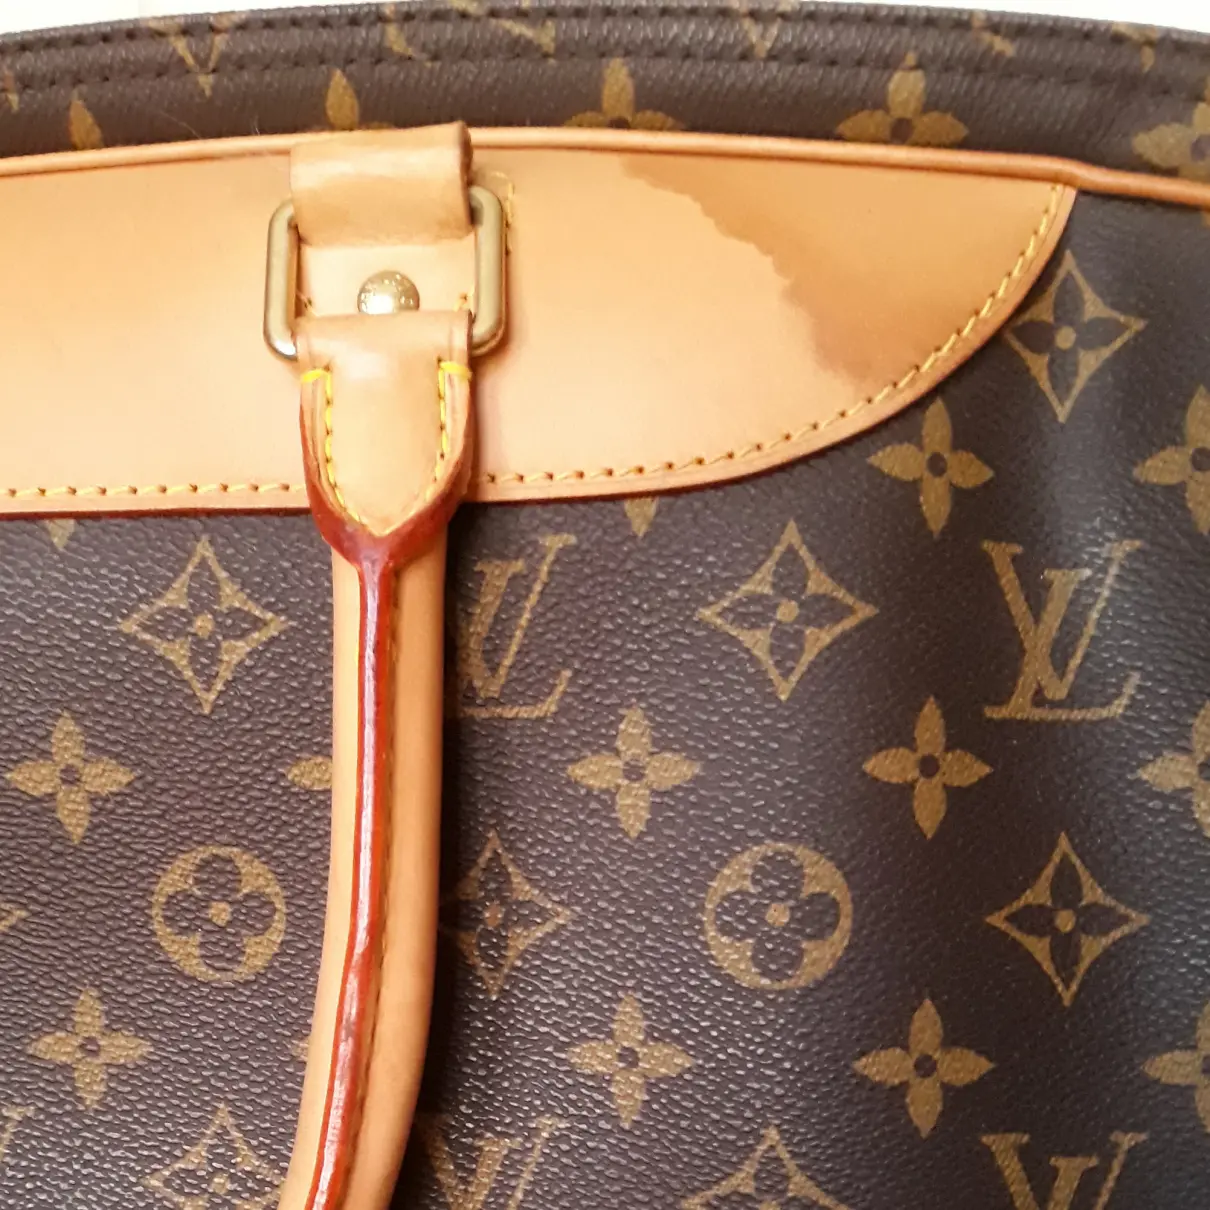 Alizé cloth 48h bag Louis Vuitton - Vintage